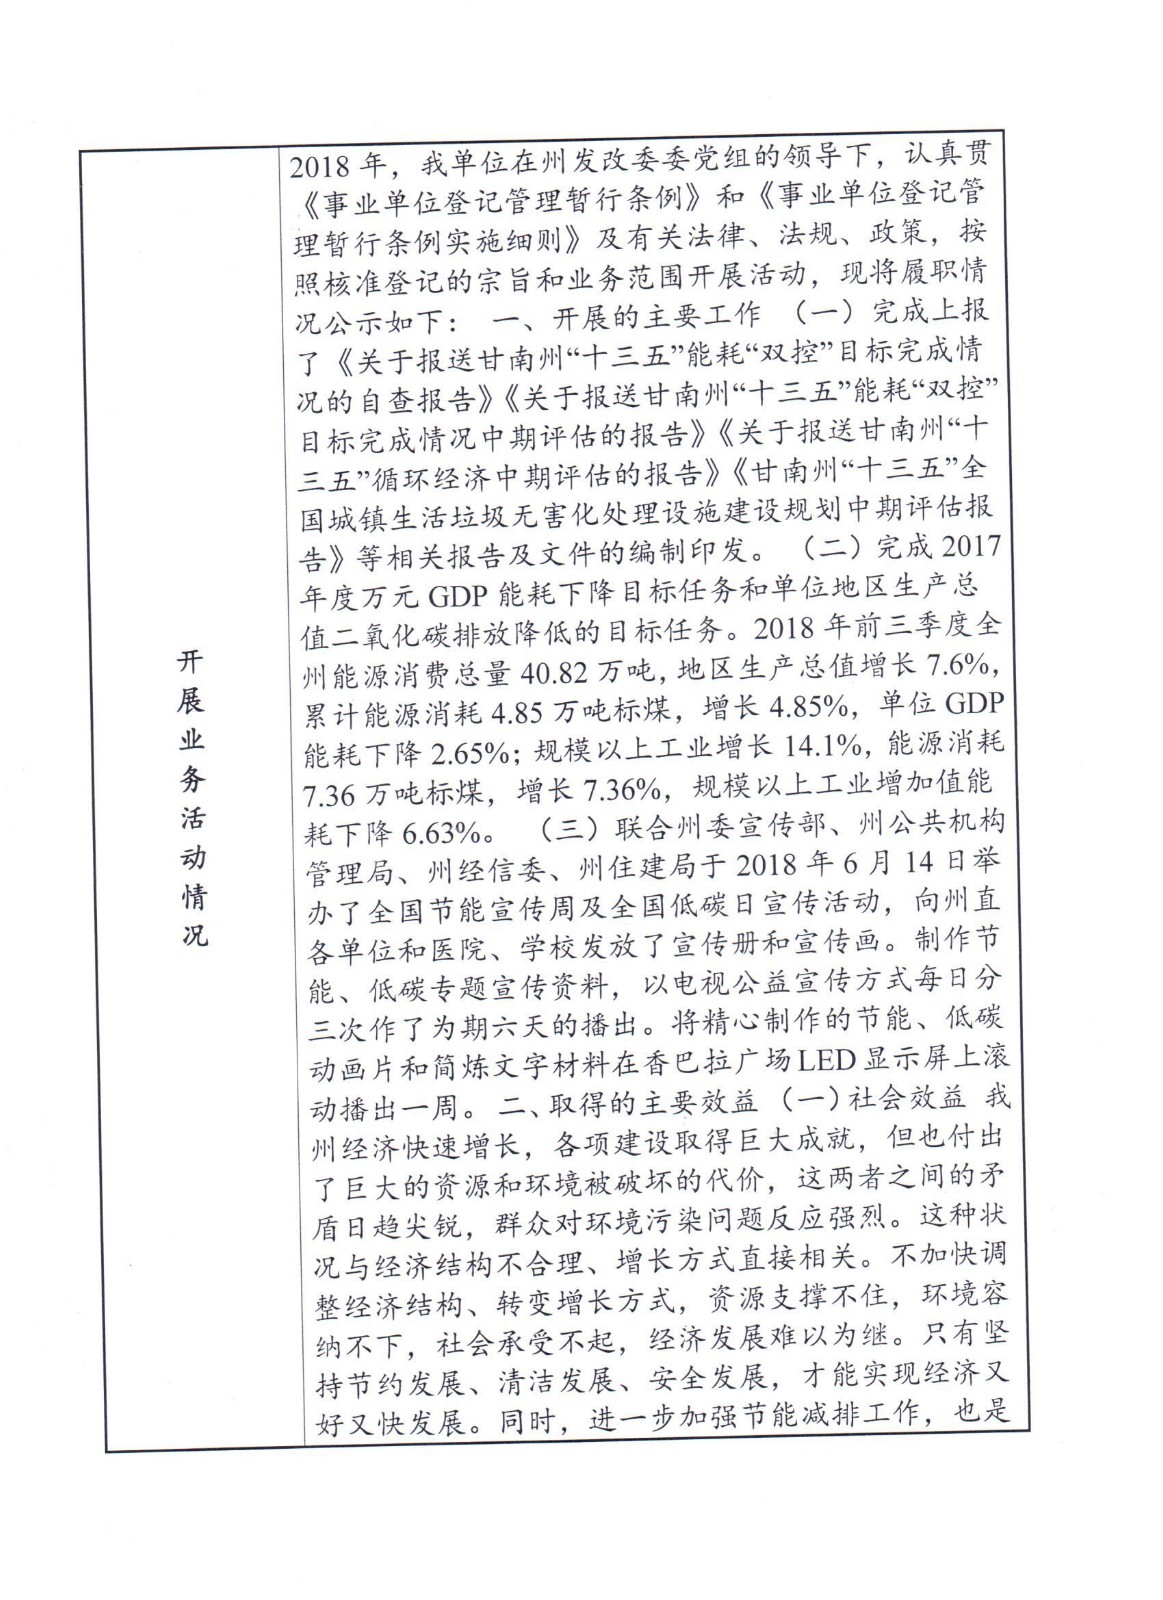 关于甘南藏族自治州节能监测中心事业单位法人2018年度报告书的公示